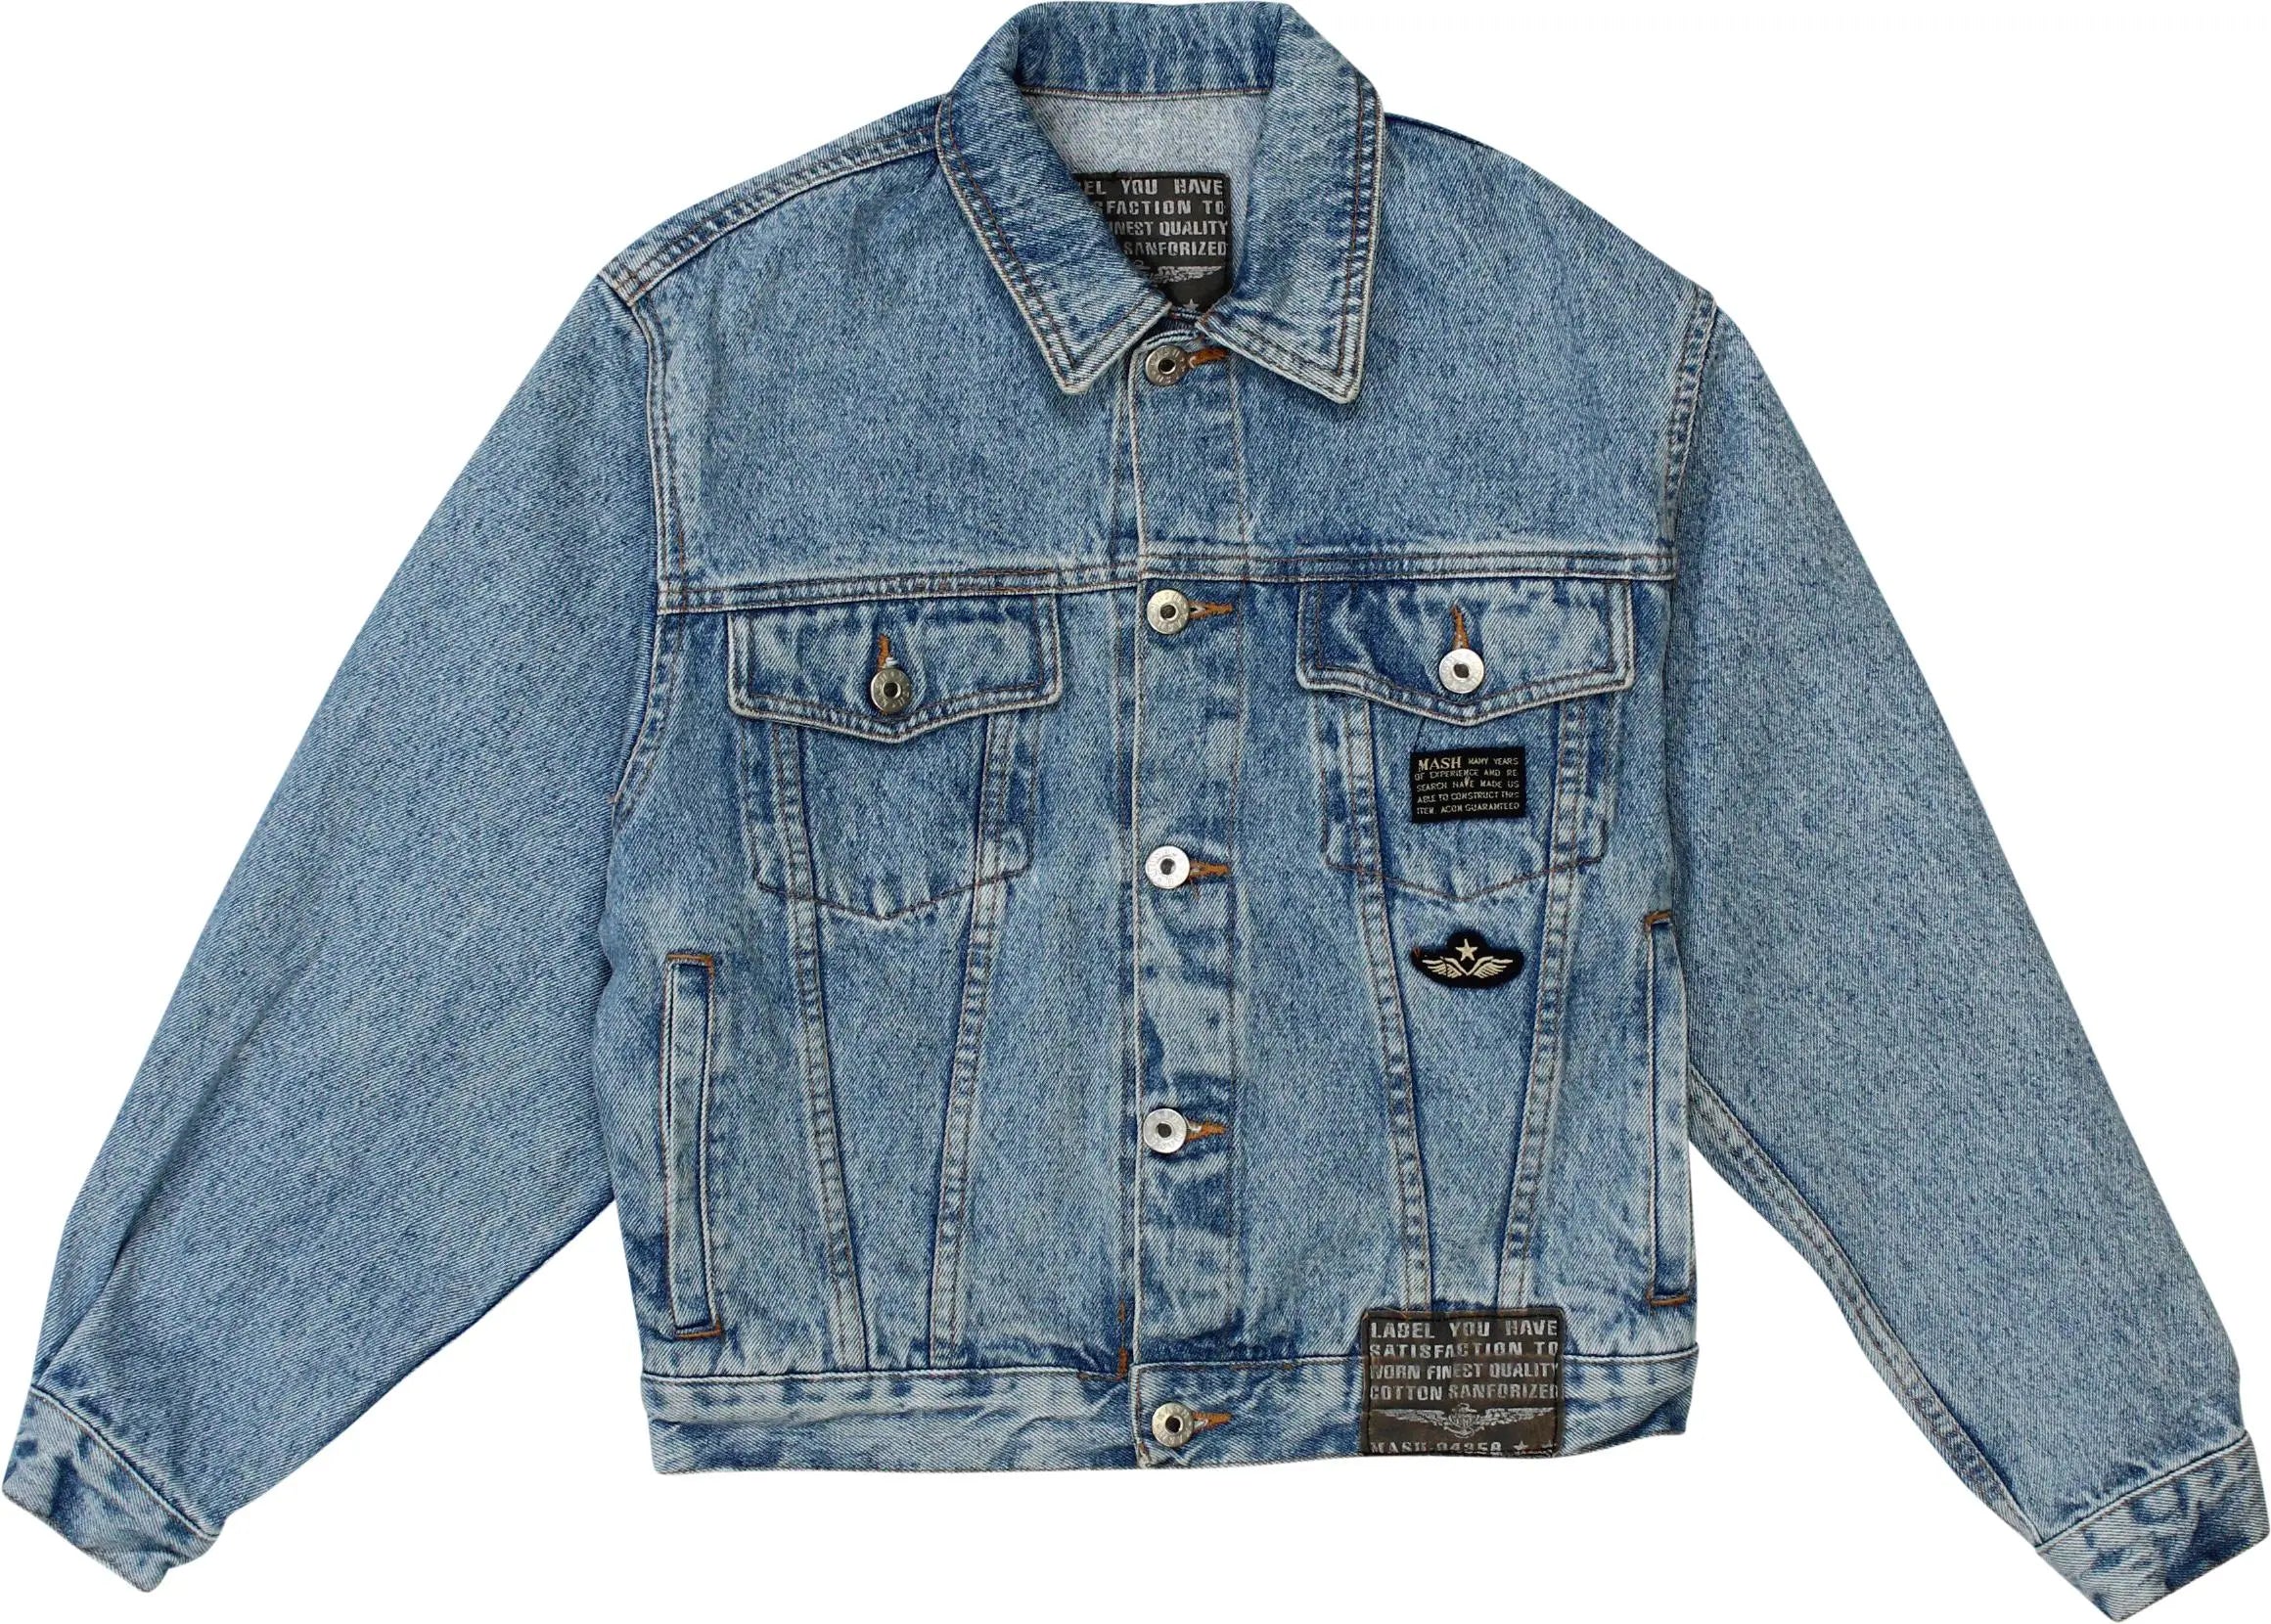 Mash - Blue Denim Jacket- ThriftTale.com - Vintage and second handclothing